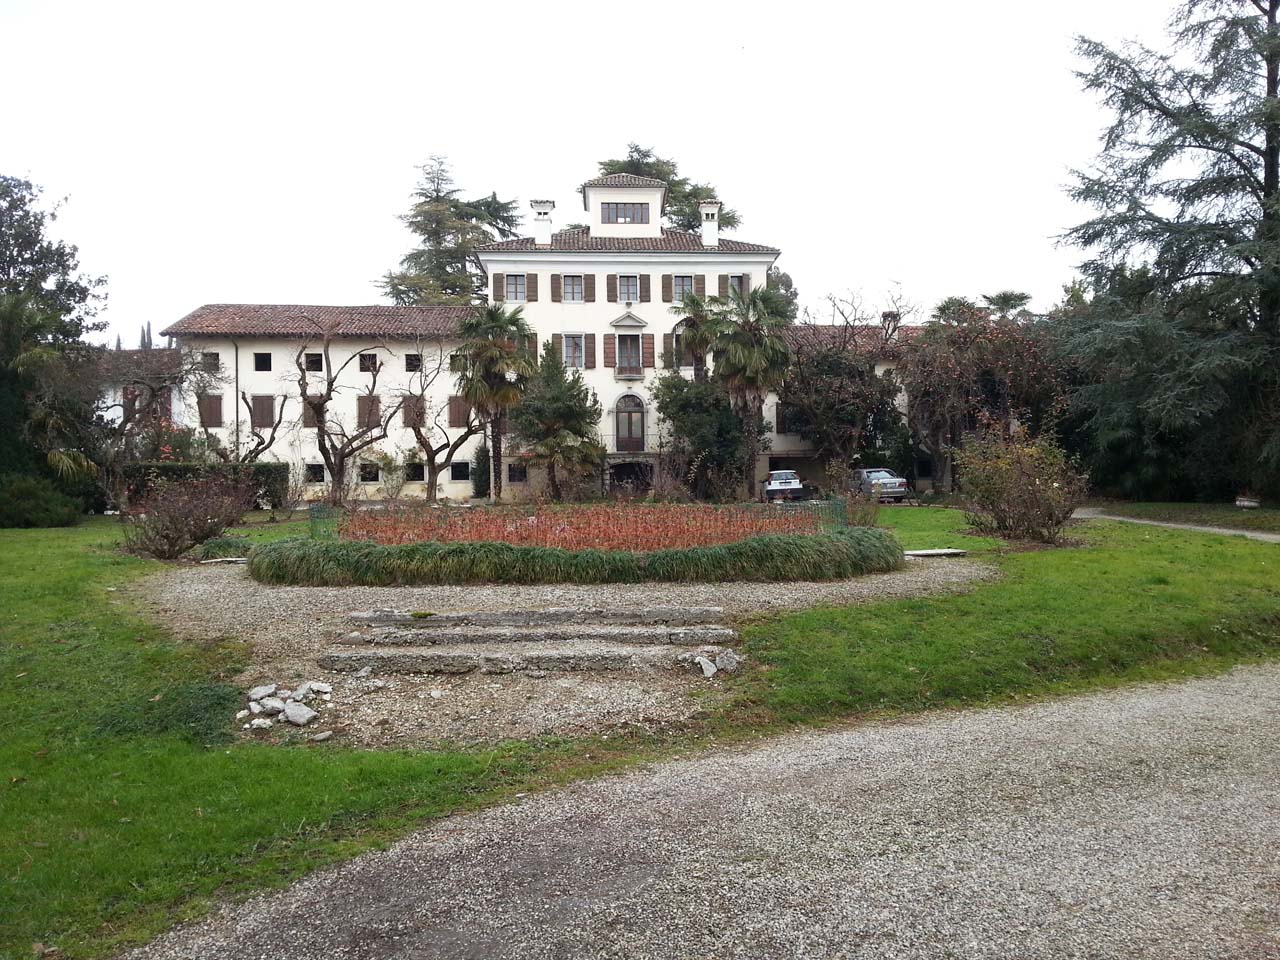 Villa Mangilli e dipendenze (villa, privata) - Povoletto (UD) 